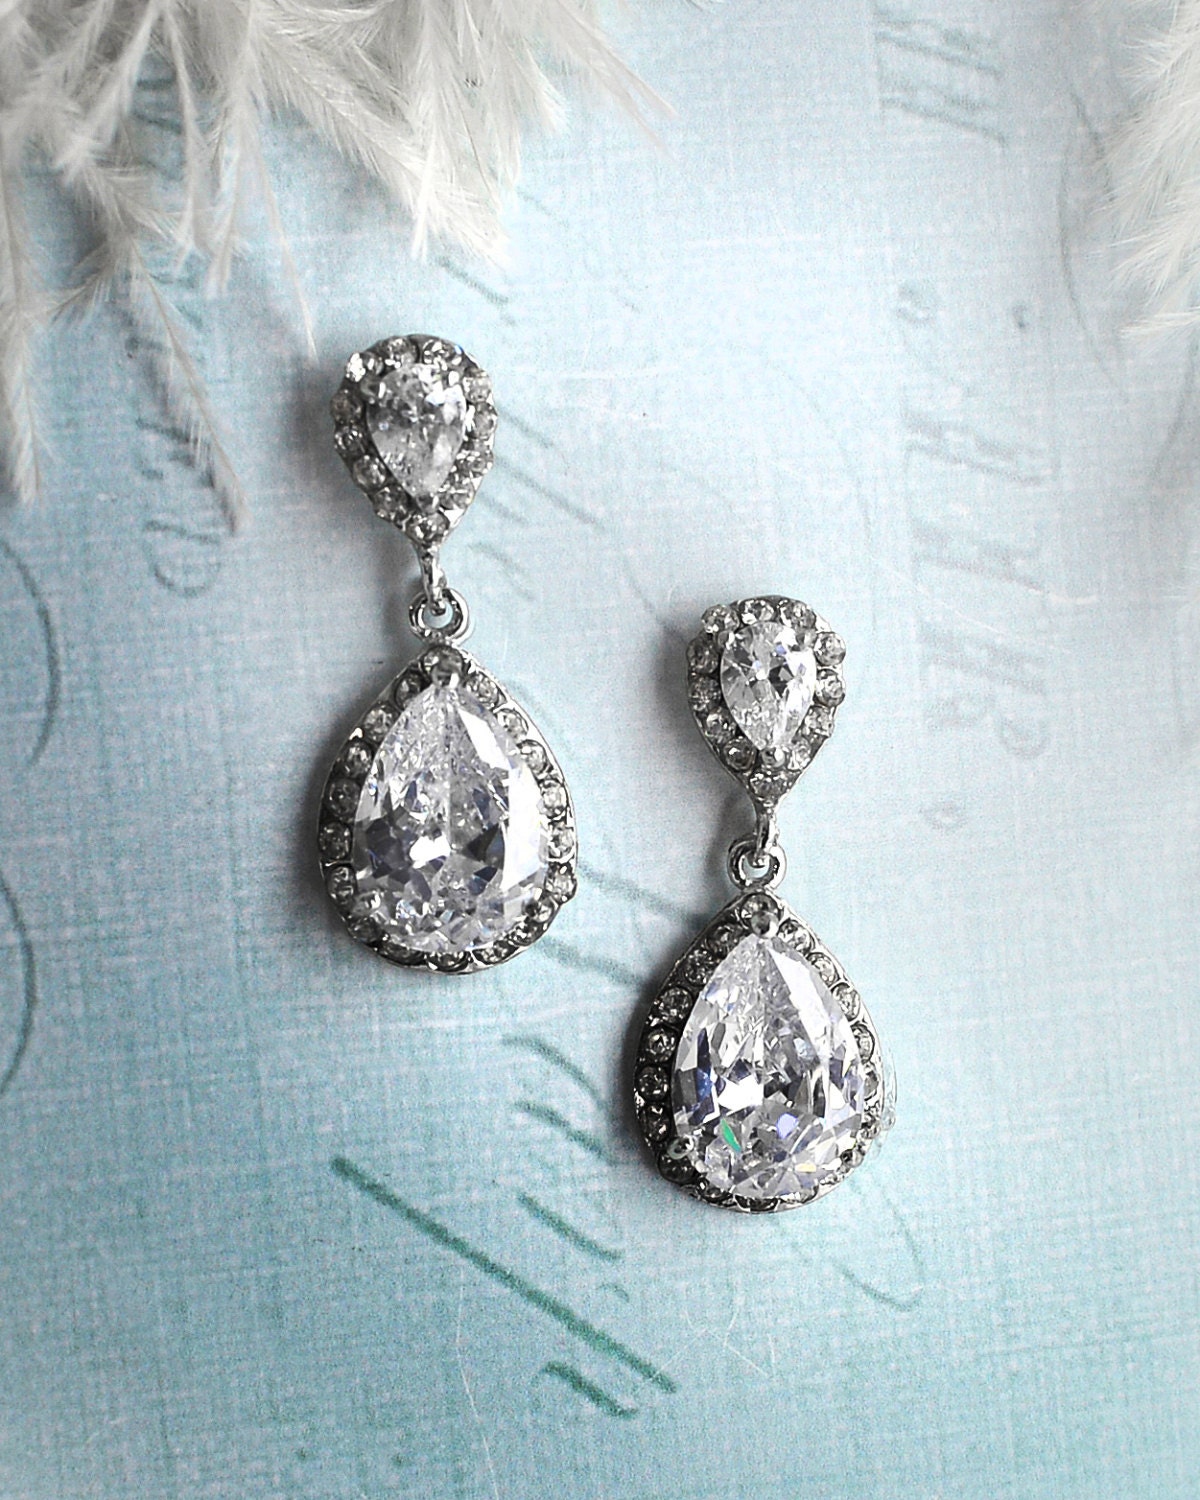 Vintage wedding earrings 1920s earrings Vintage bridal